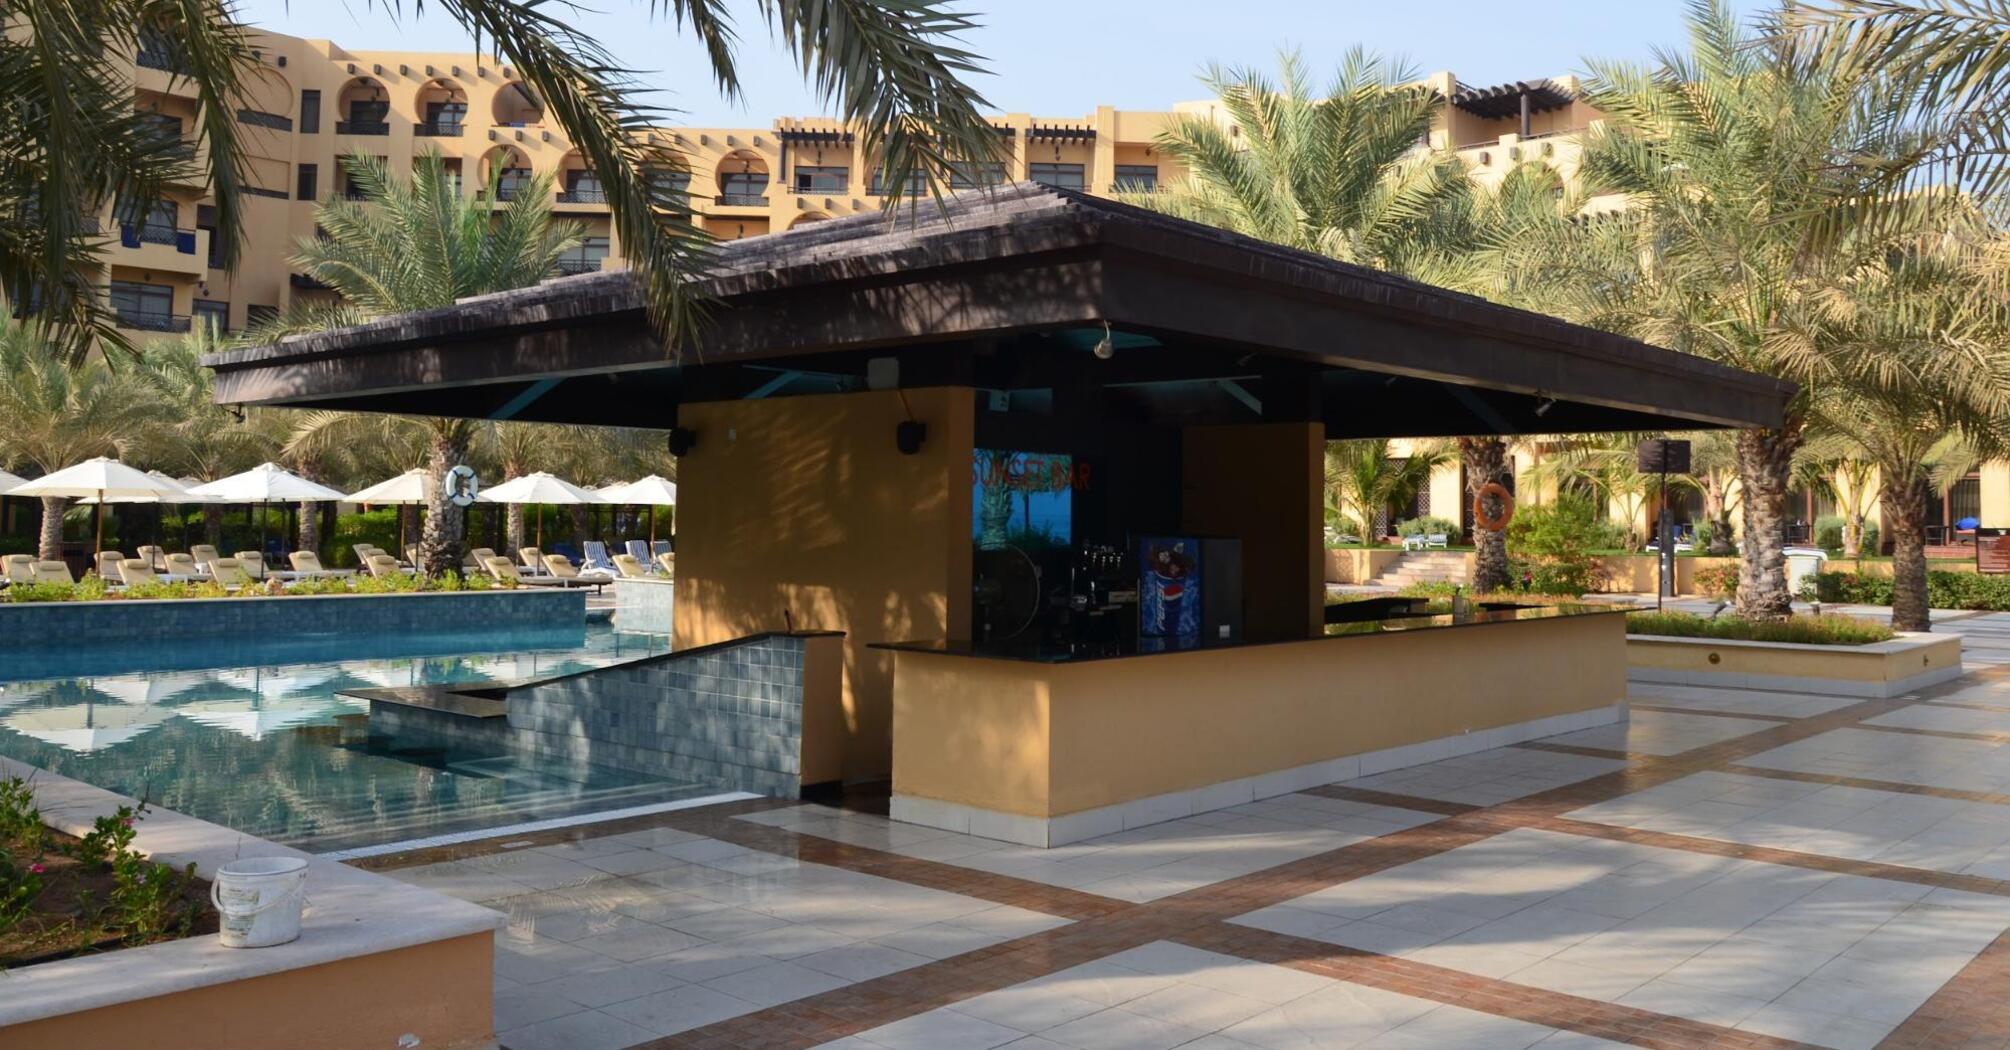 Bar near the pool with sunbeds